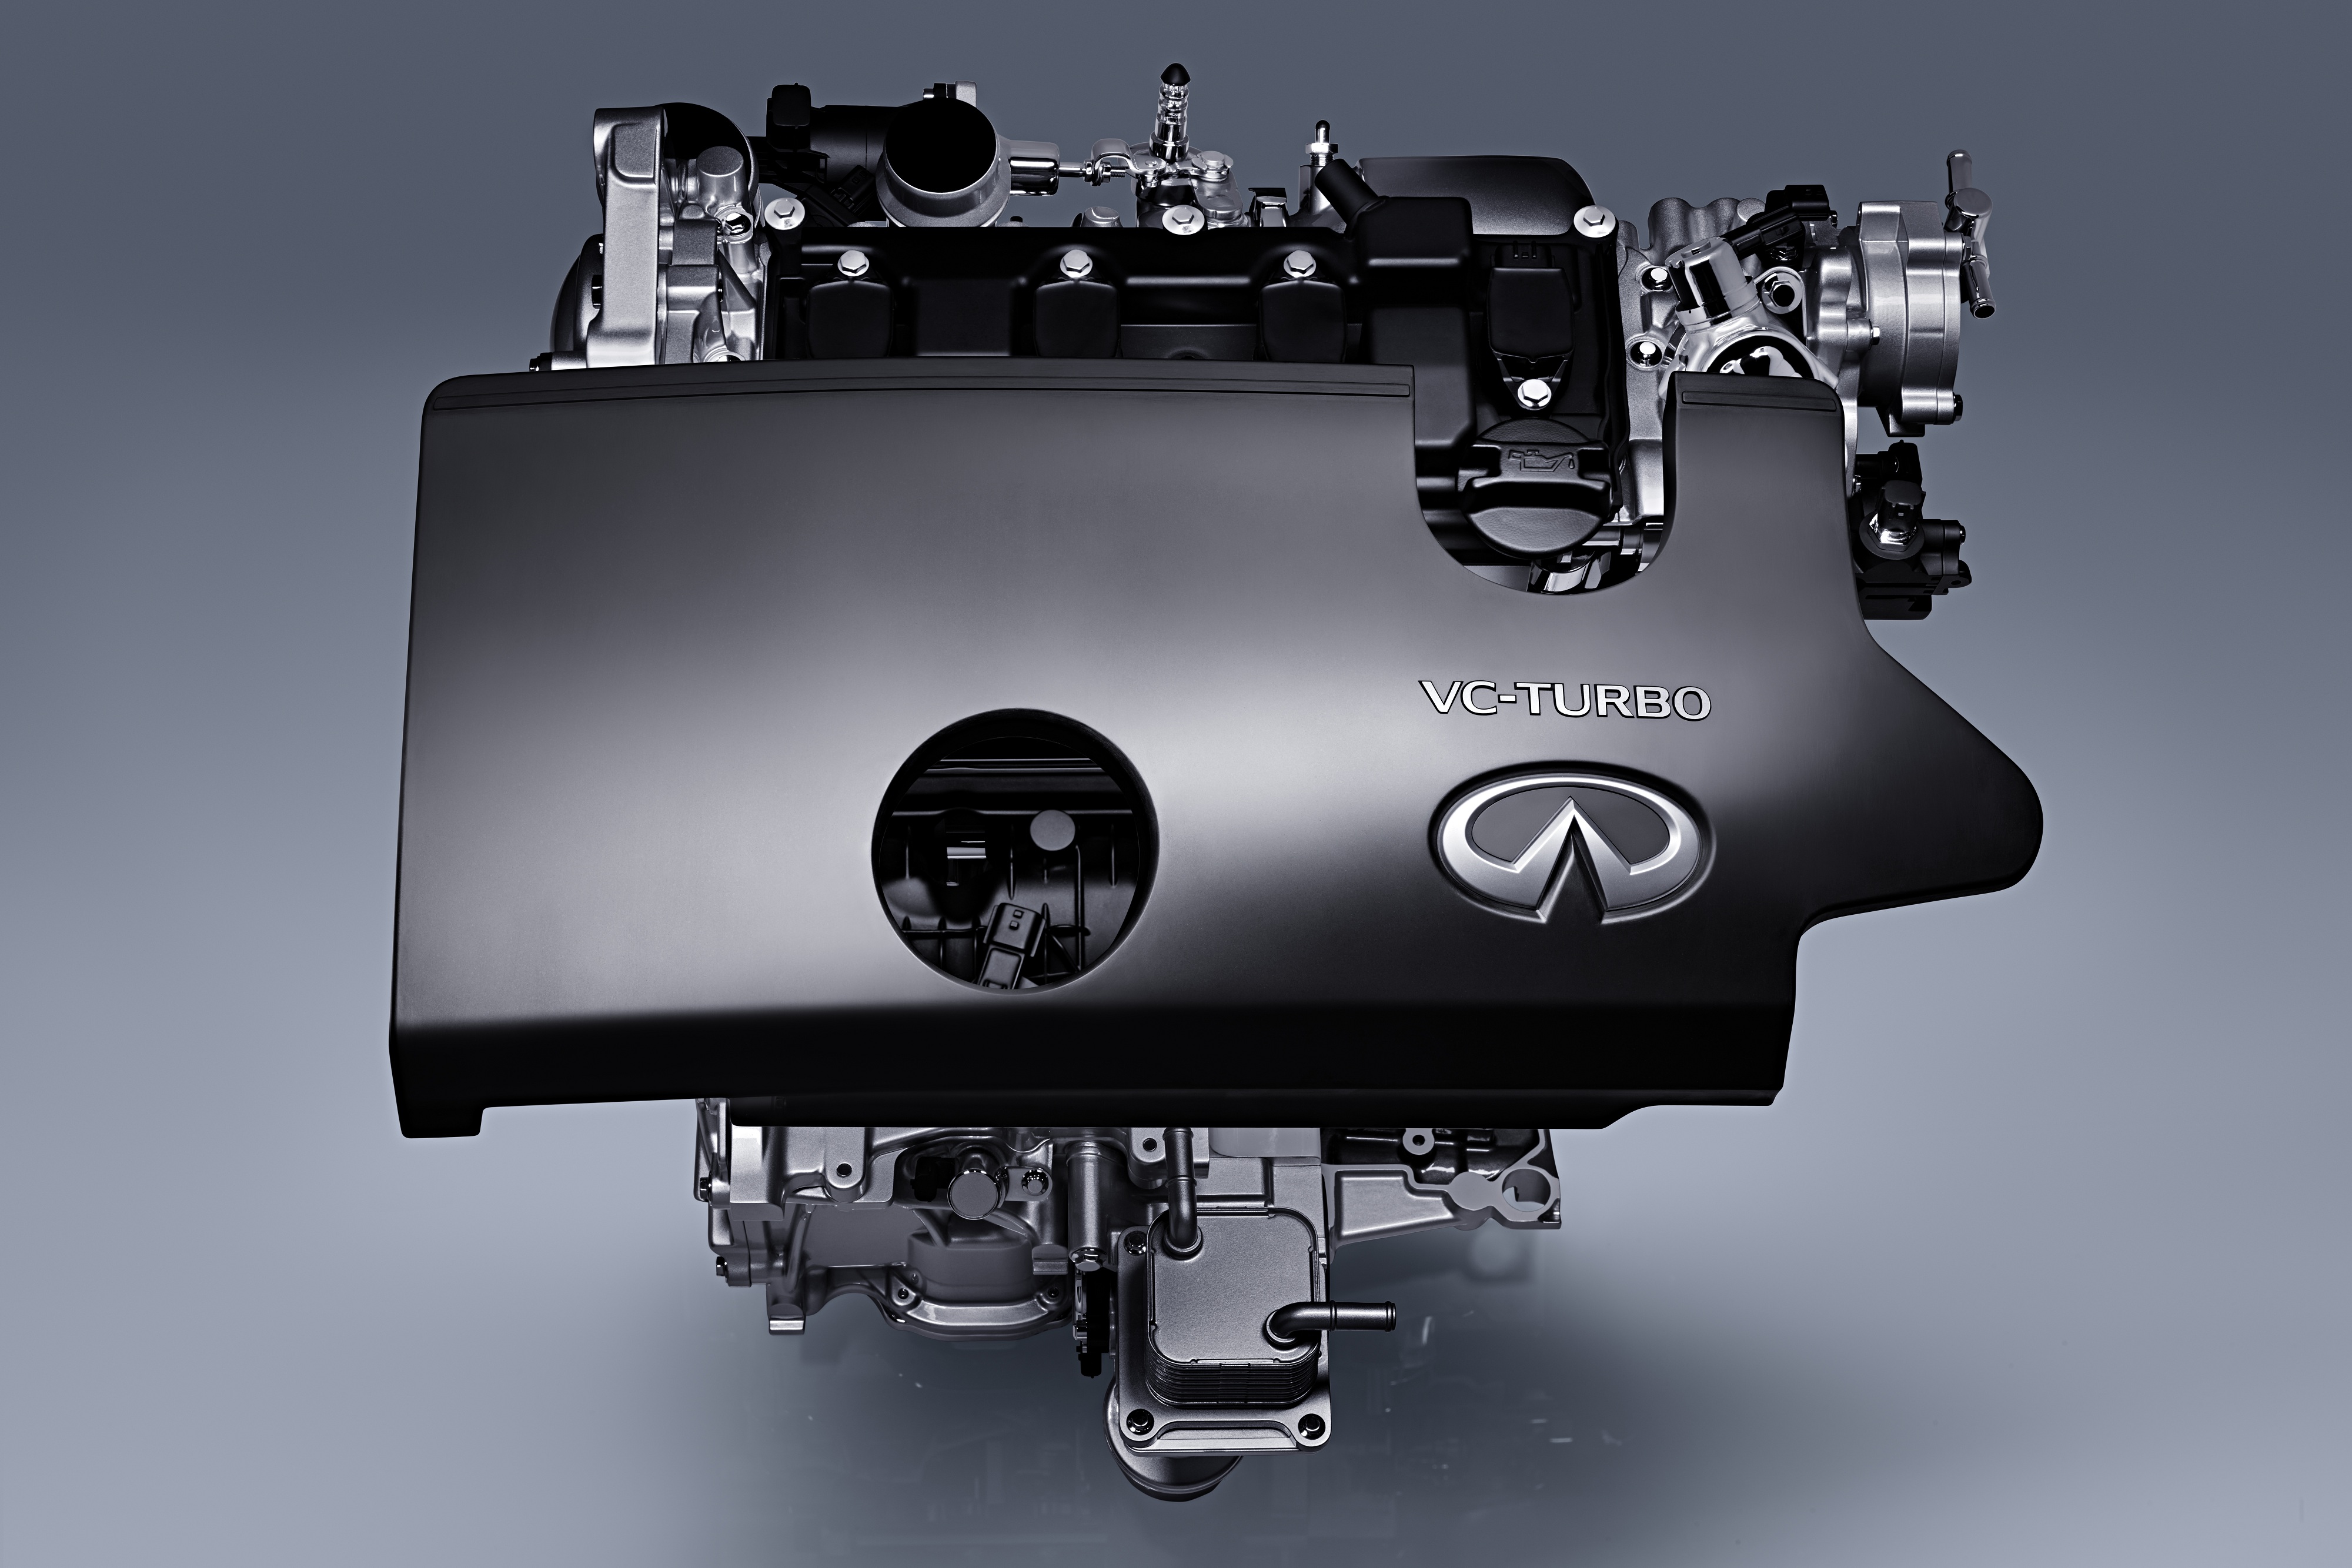 6.全新VC-Turbo发动机未来将成为英菲尼迪品牌最重要的动力系统.jpg